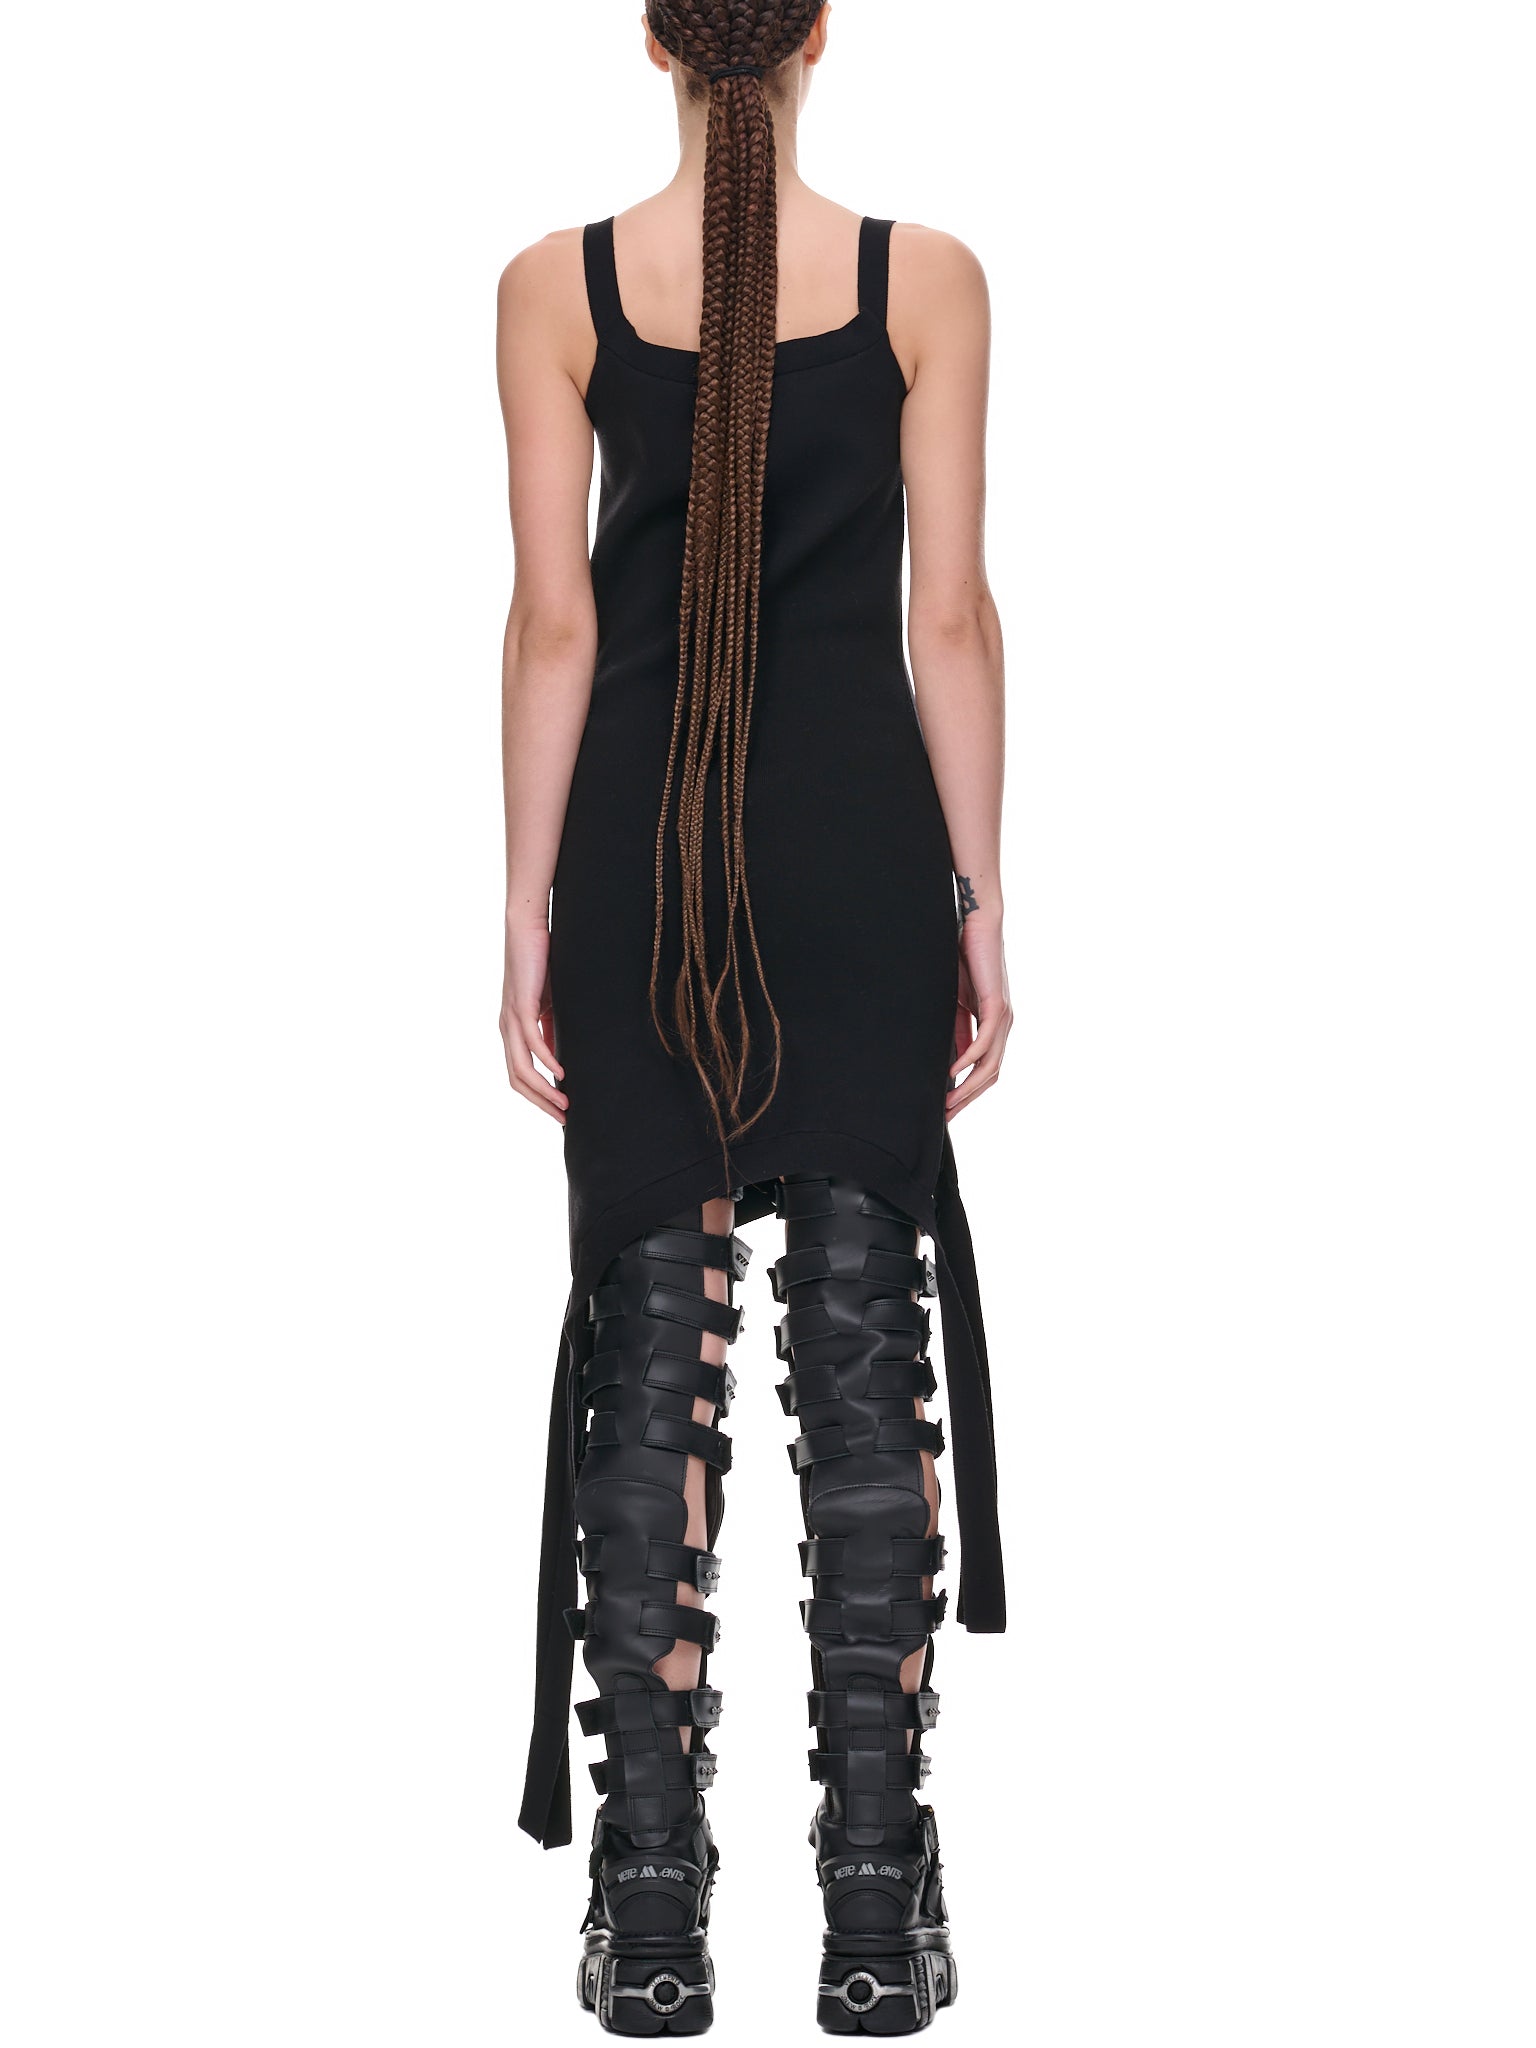 Deconstructed Dress (KW0814-YN0213-BLACK)